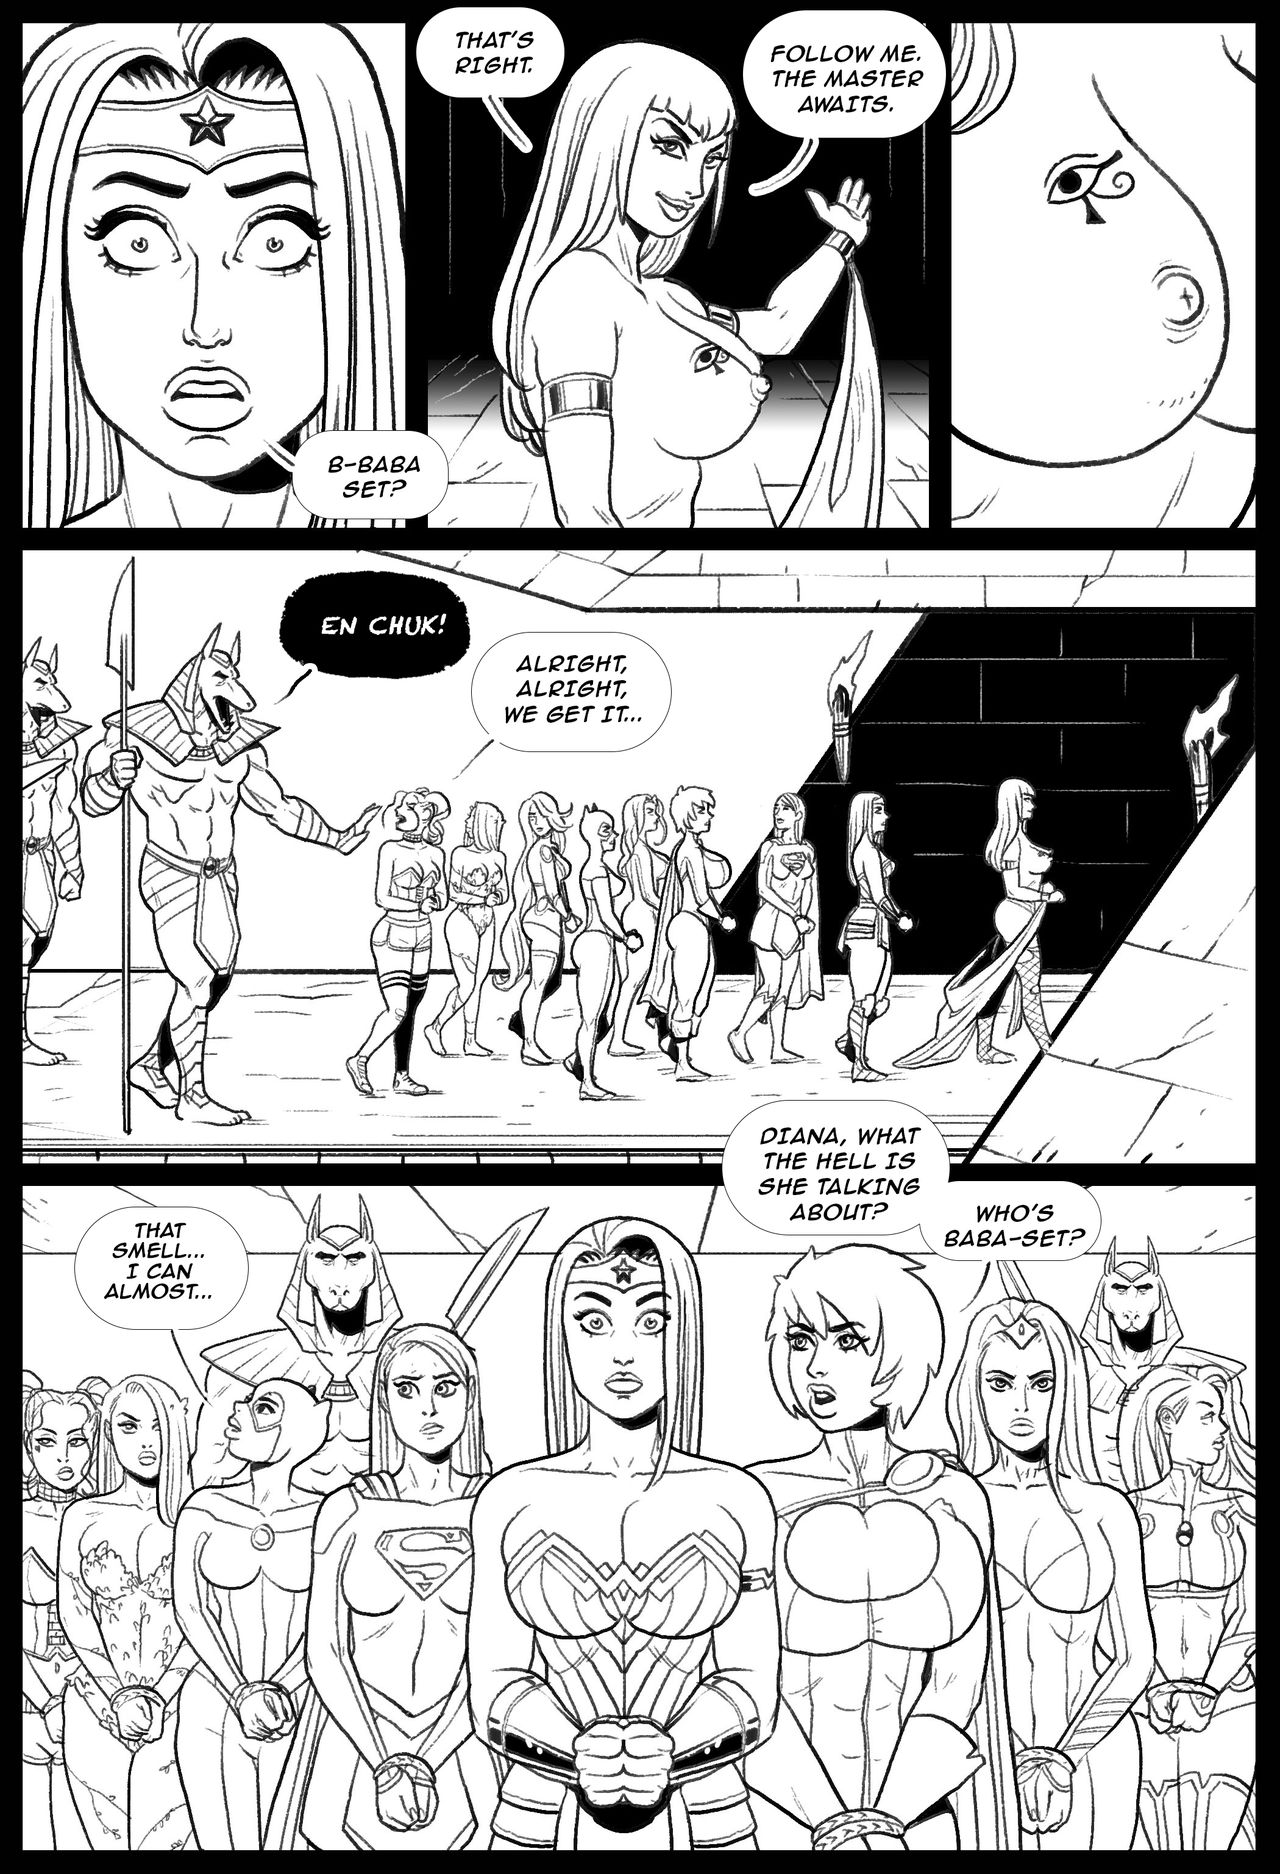 Baba Kixxx - Brides of Baba-Set - Page 8 - Comic Porn XXX